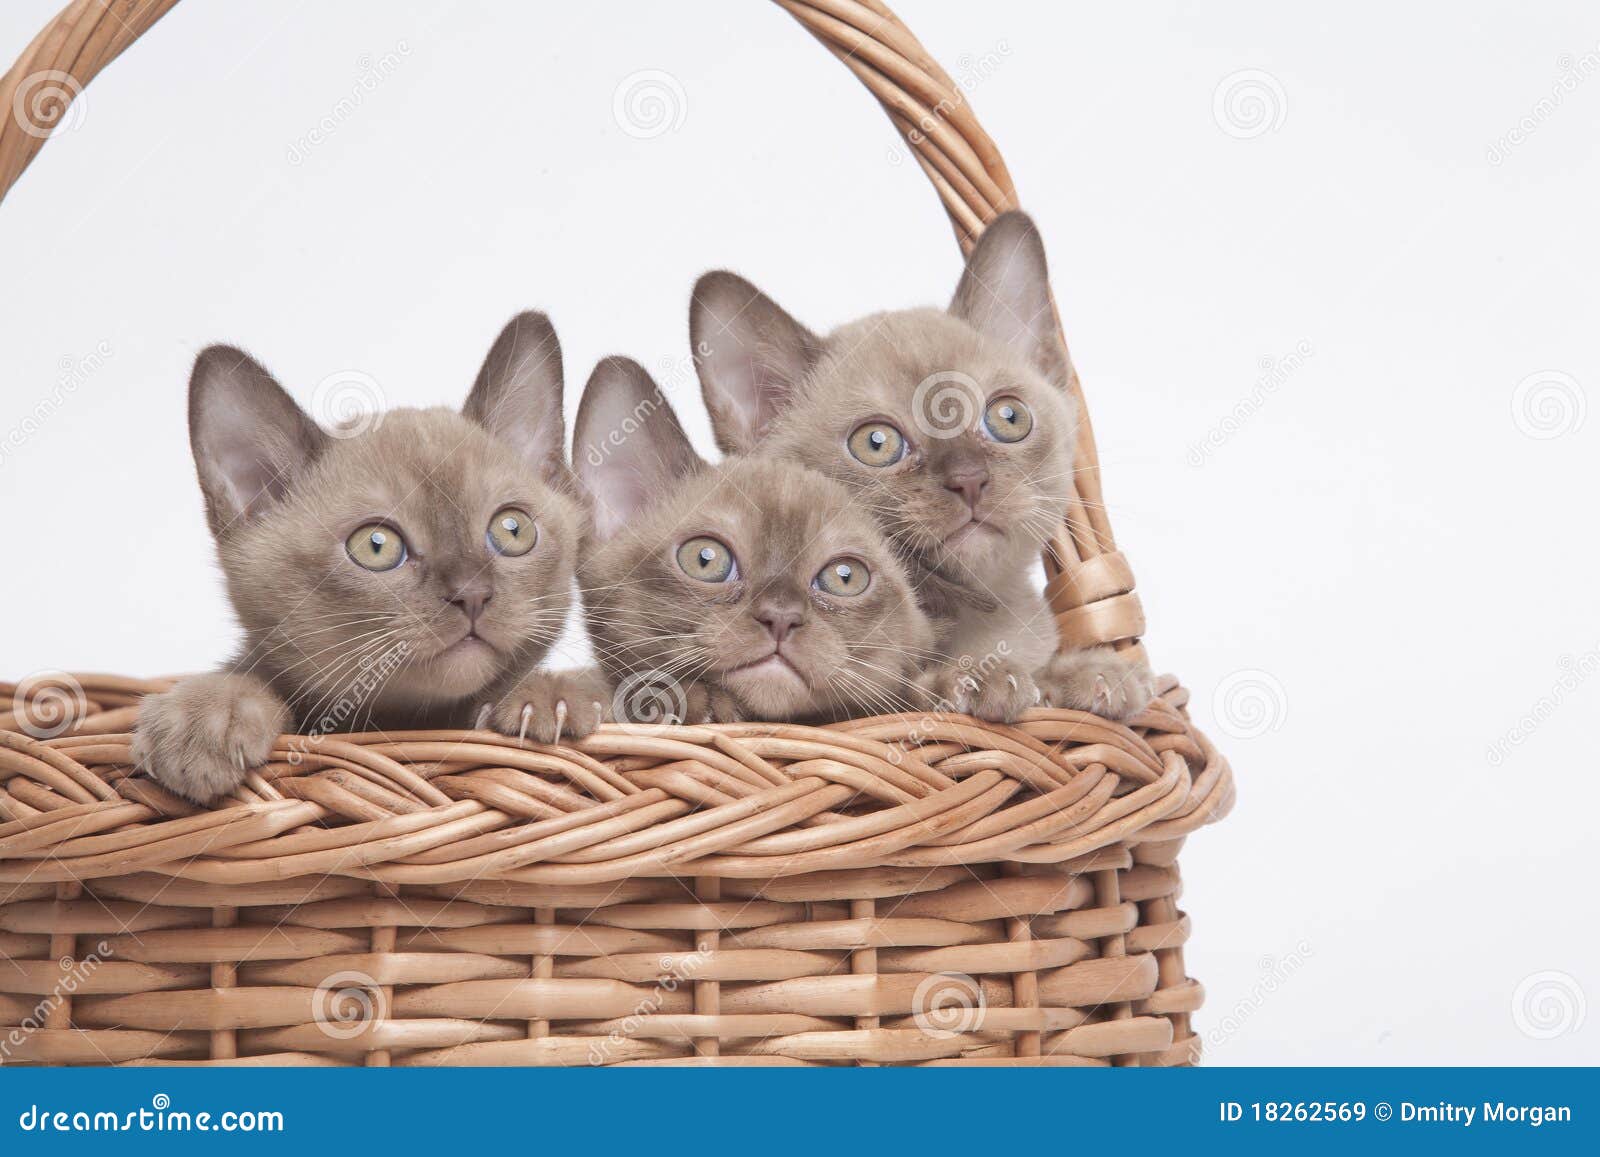 Gatti Burmese in grande cestino. Abbastanza piccolo gatto Burmese della razza di colore pallido (di colore paglierino). isolato sopra priorità bassa bianca